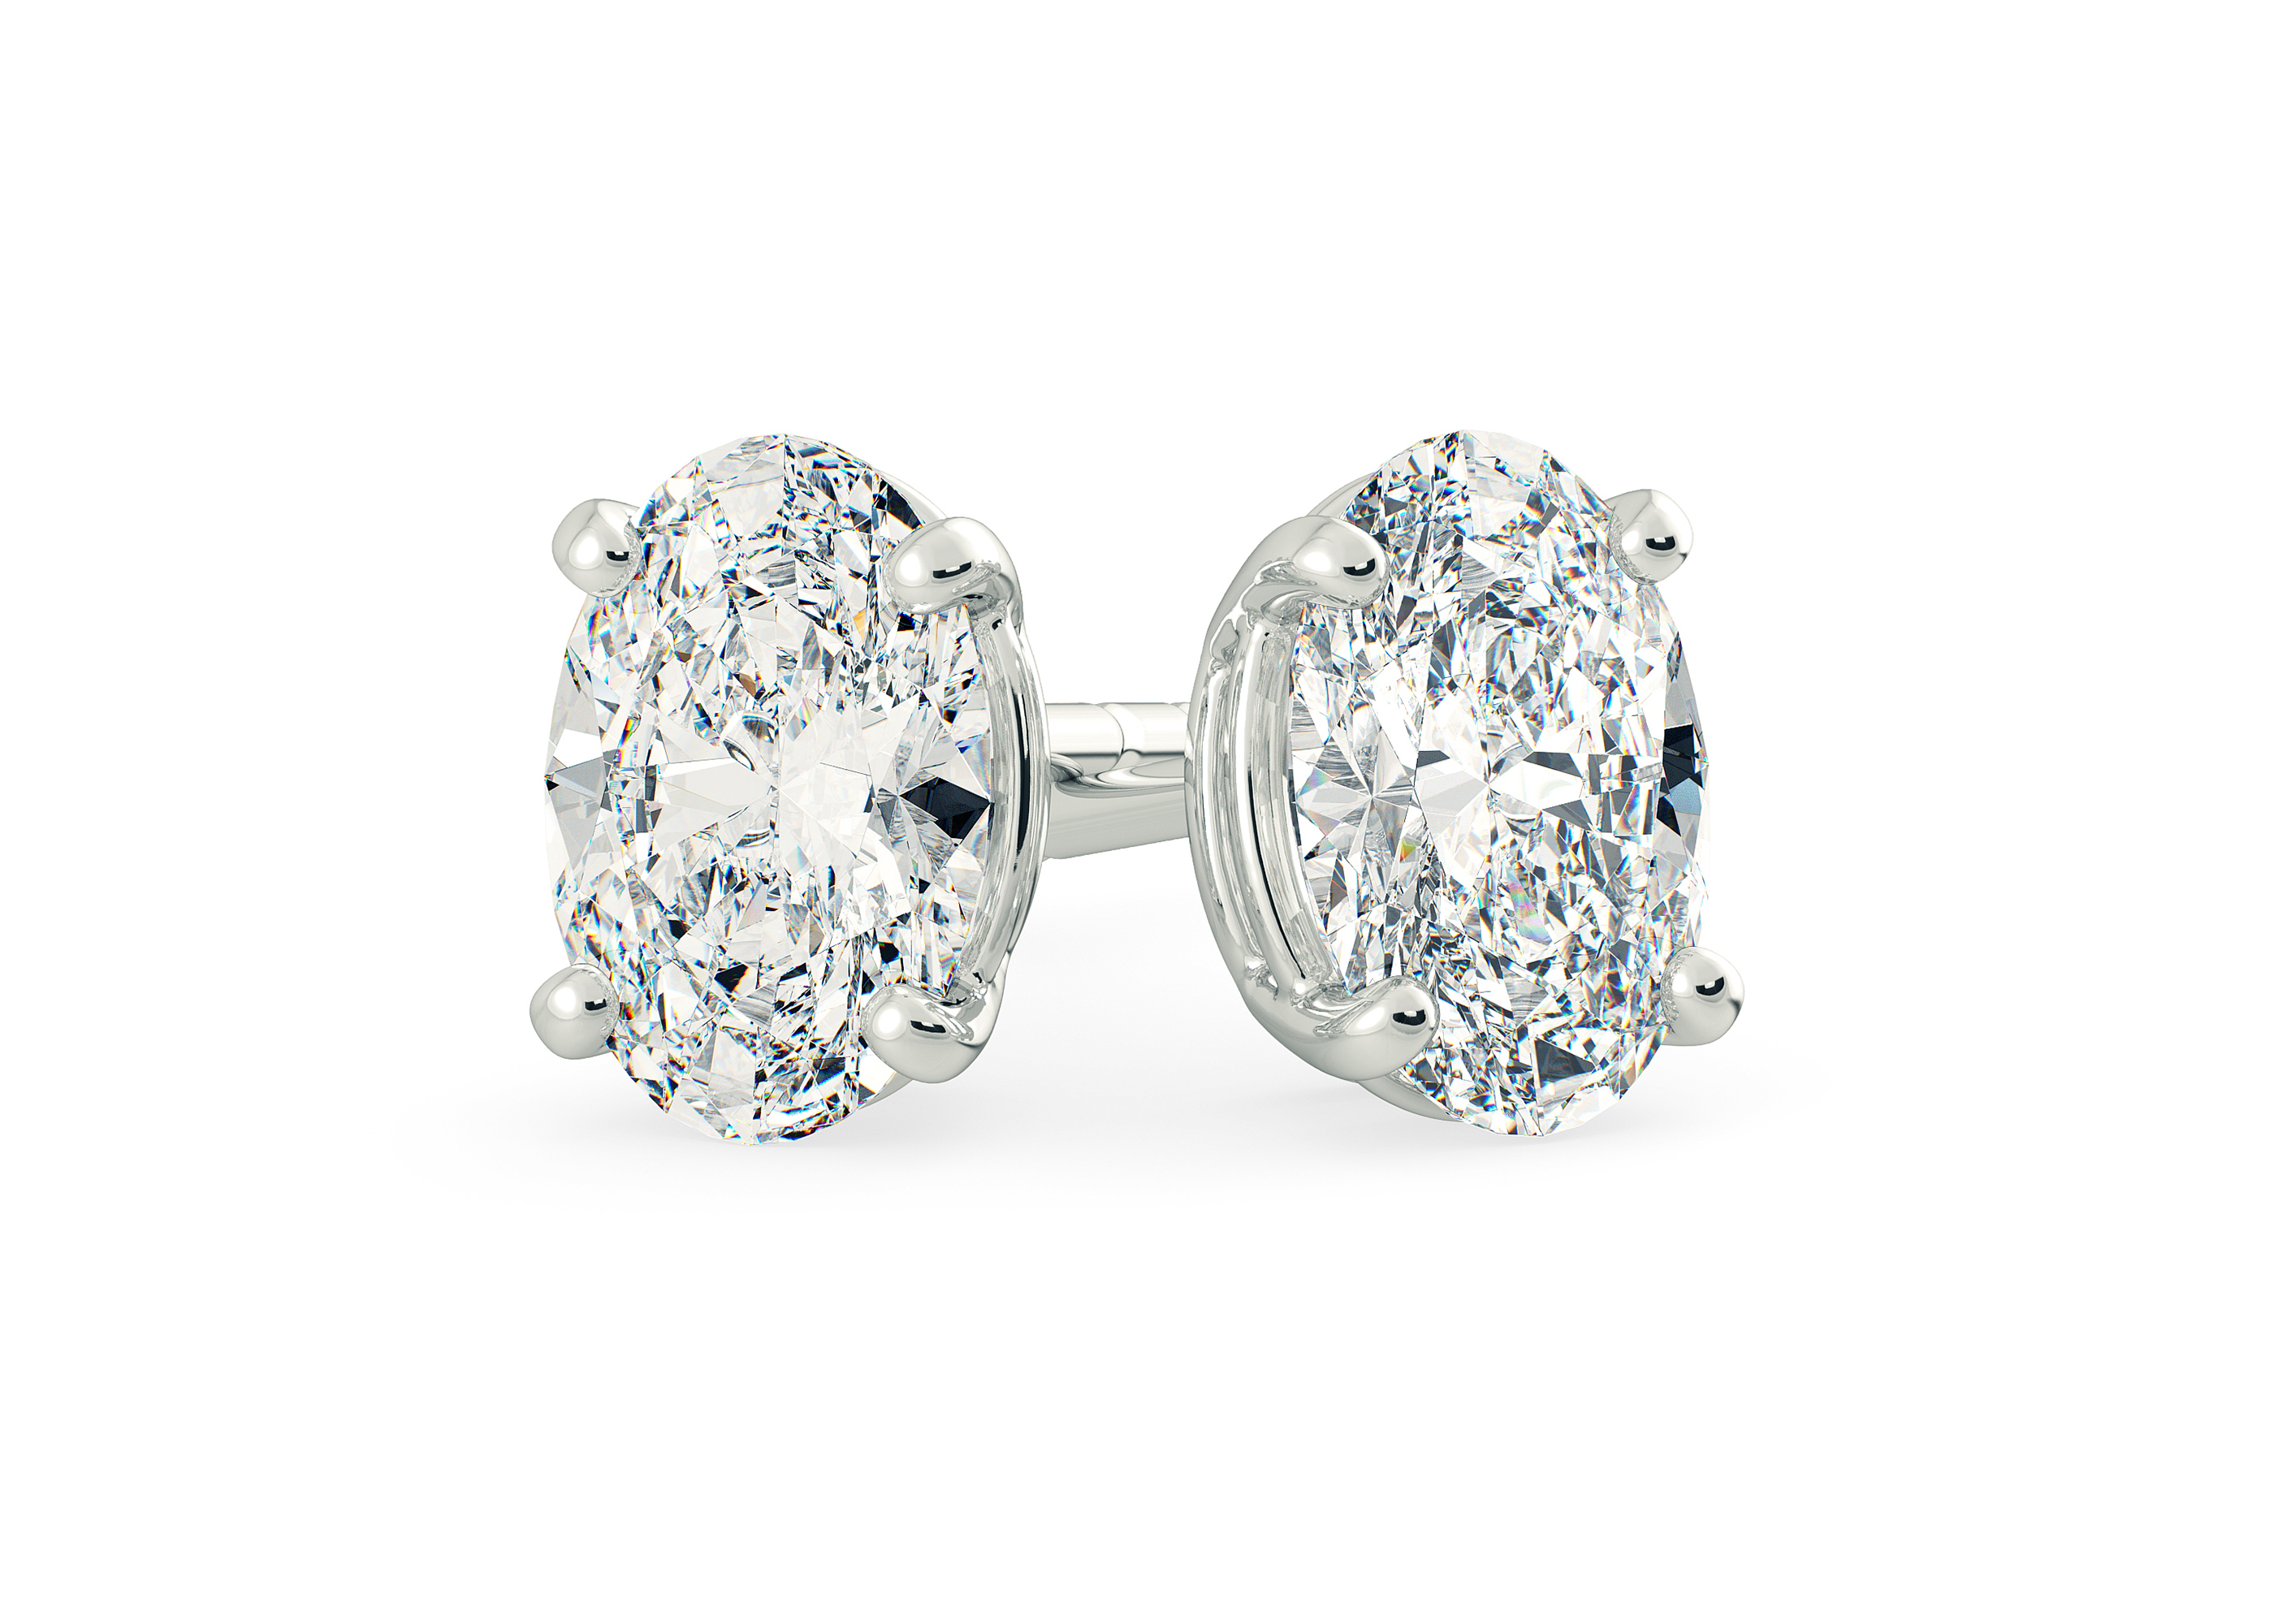 One Carat Oval Diamond Stud Earrings in 18K White Gold